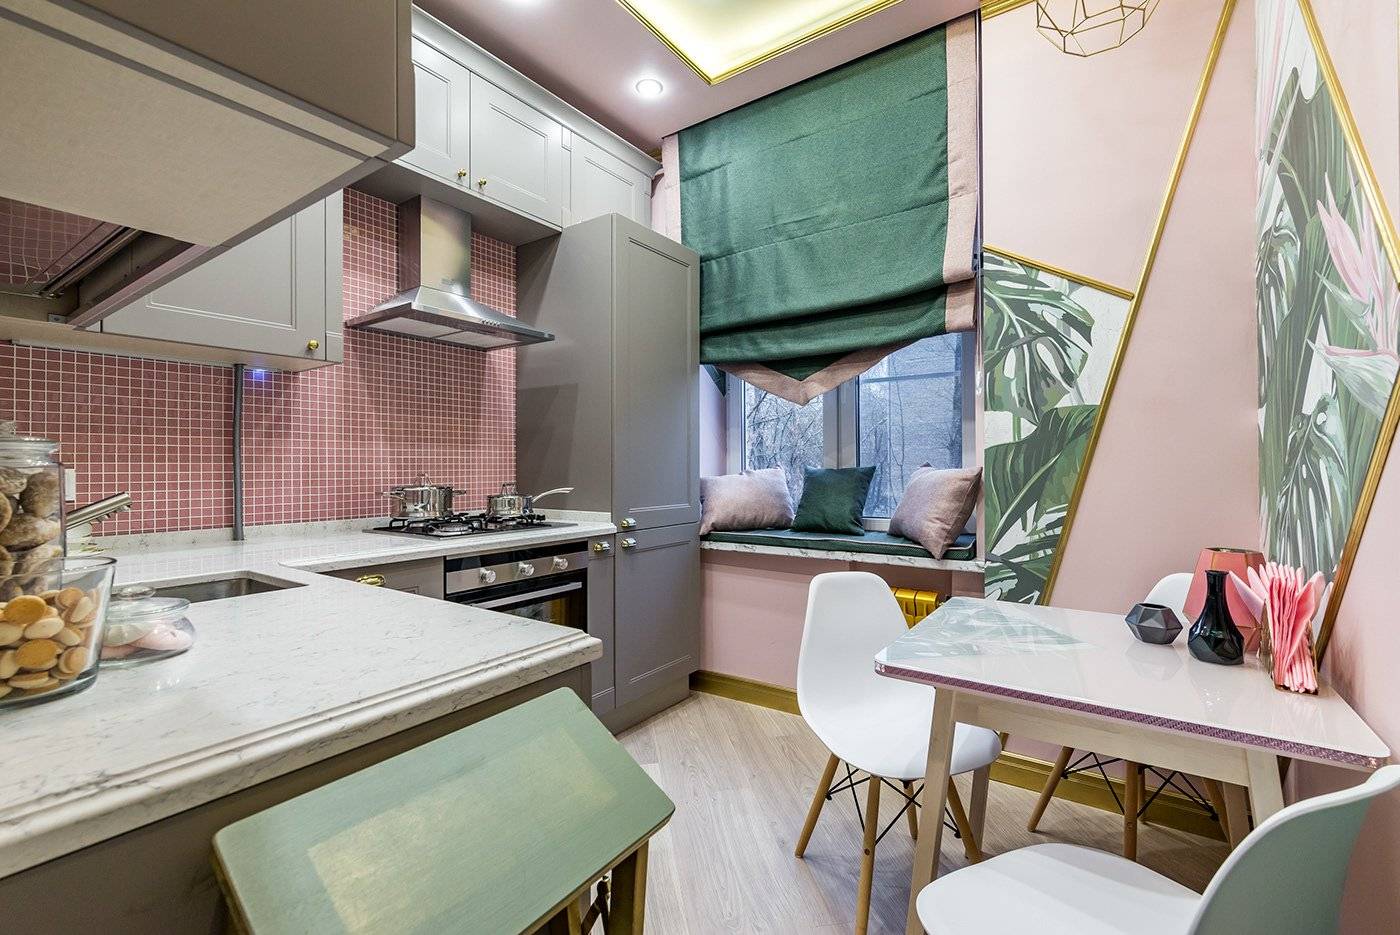 Дизайн кухни 10 кв метров: планировка, цветовая гамма, выбор стиля